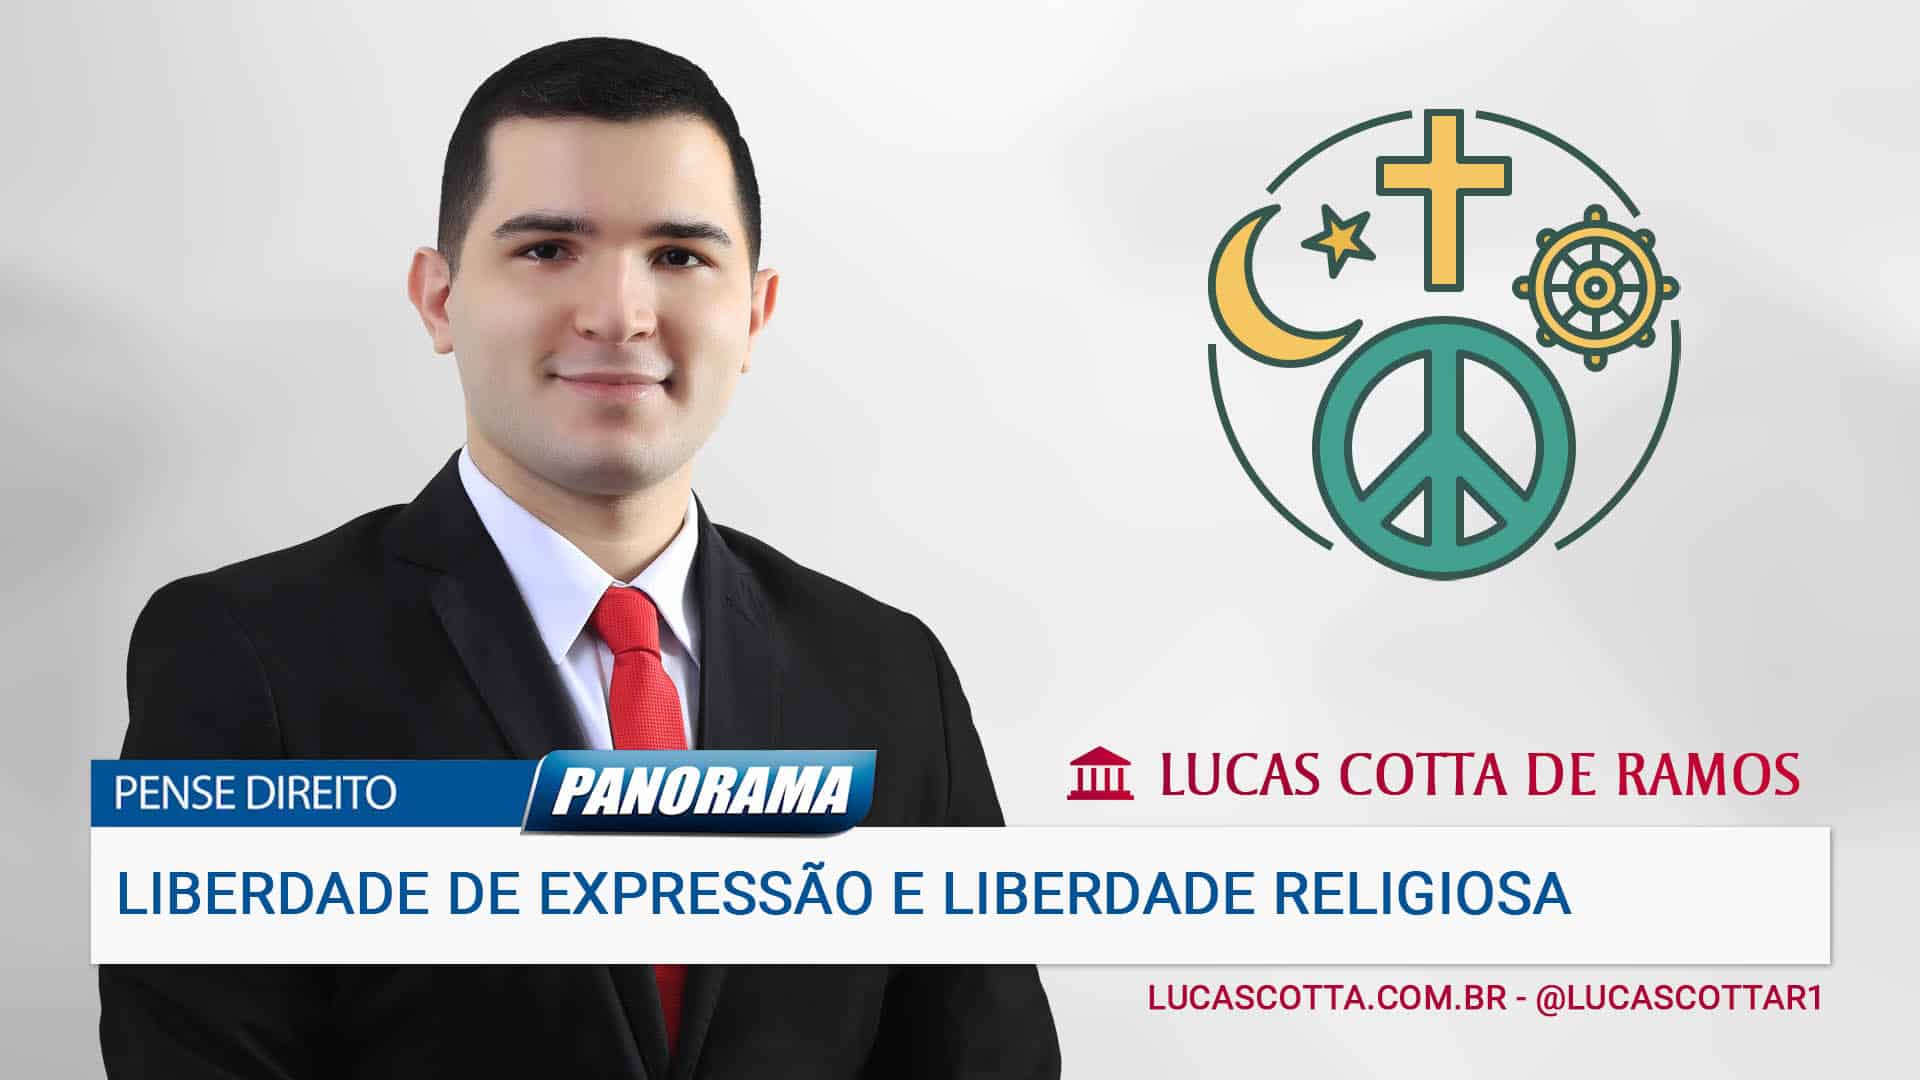 You are currently viewing Liberdade de expressão e liberdade religiosa